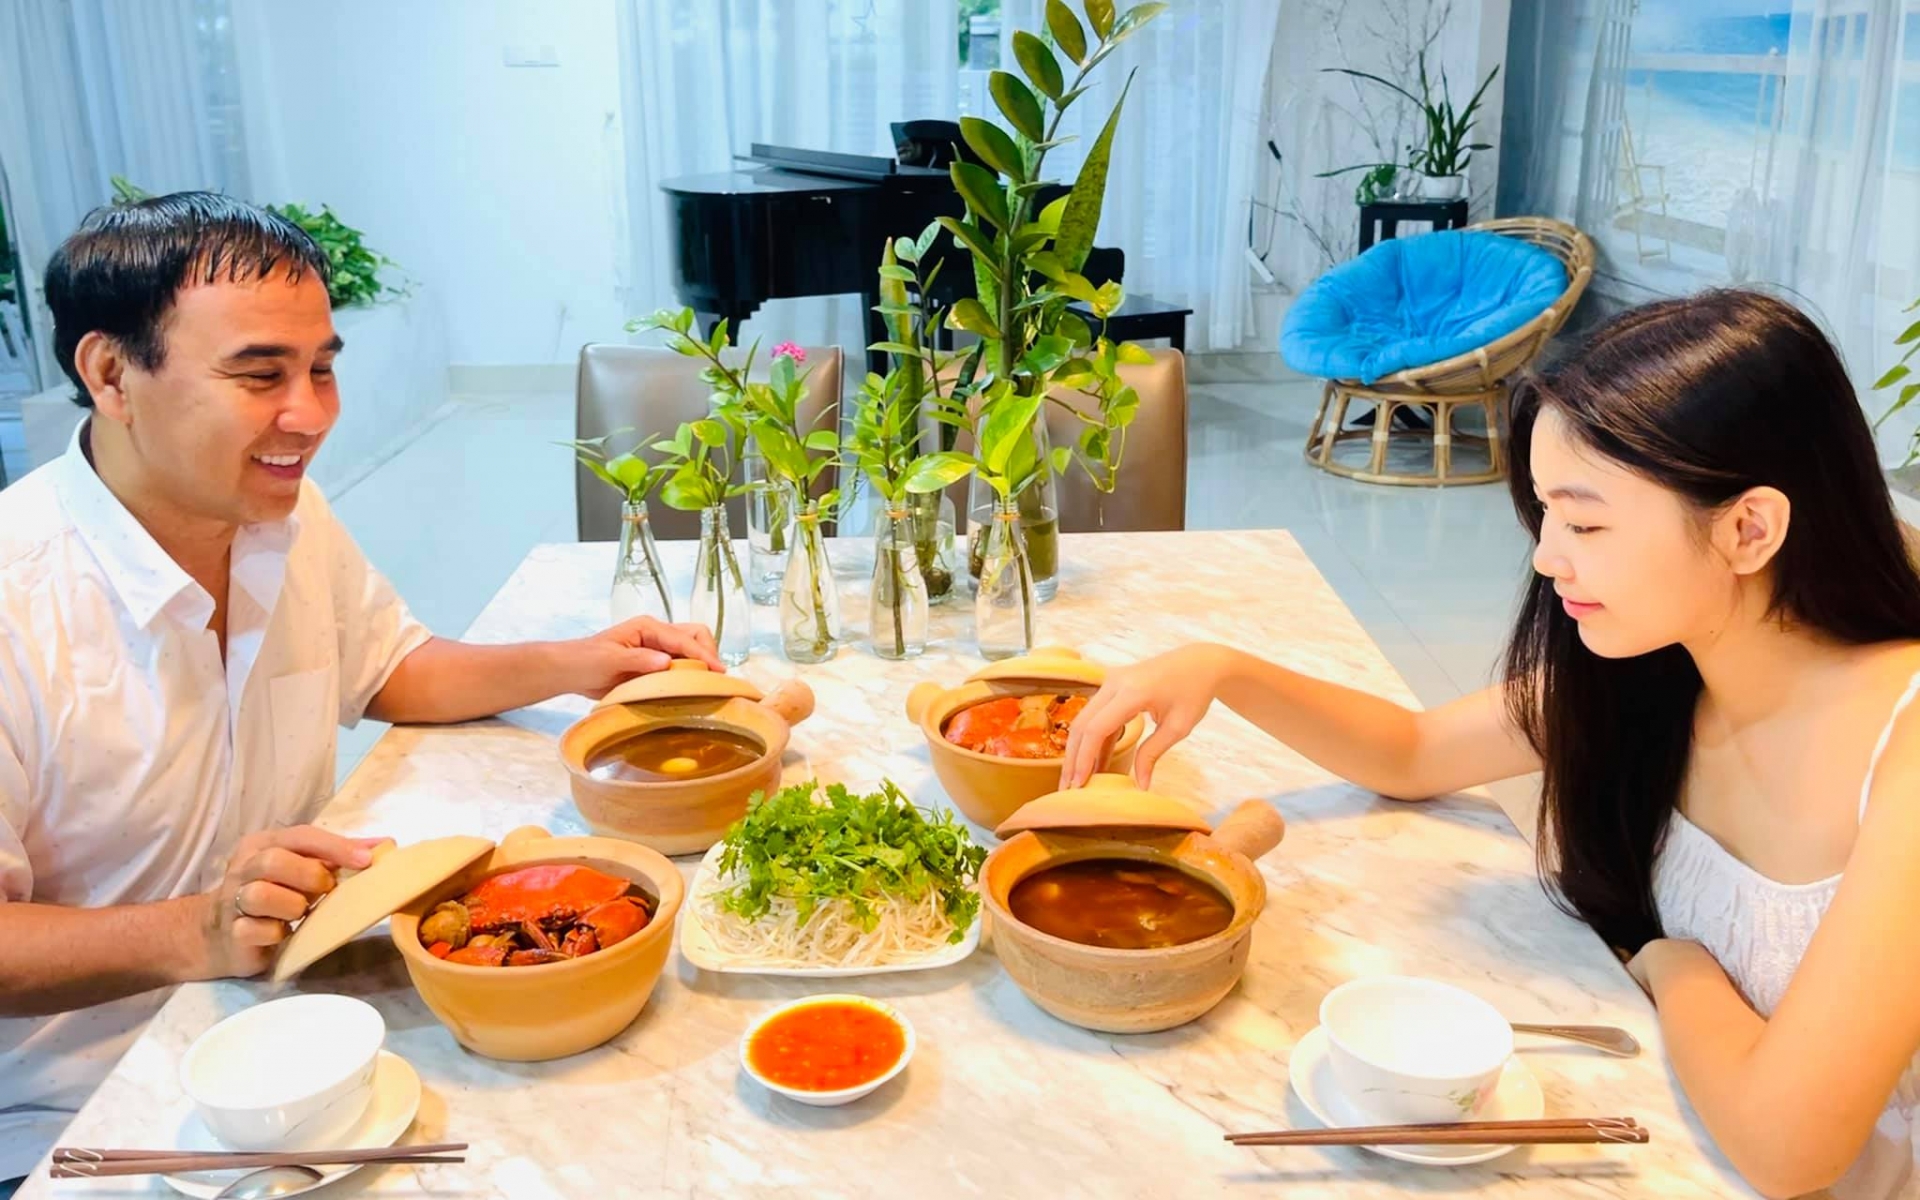 MC Quyền Linh giới thiệu bữa cơm gia đình bên con gái Lọ Lem. Thời gian giãn cách xã hội, nam MC ở nhà cùng bà xã và hai con gái tận hưởng những thú vui đời thường như chăm vườn cây, nấu ăn, tập thể dục.